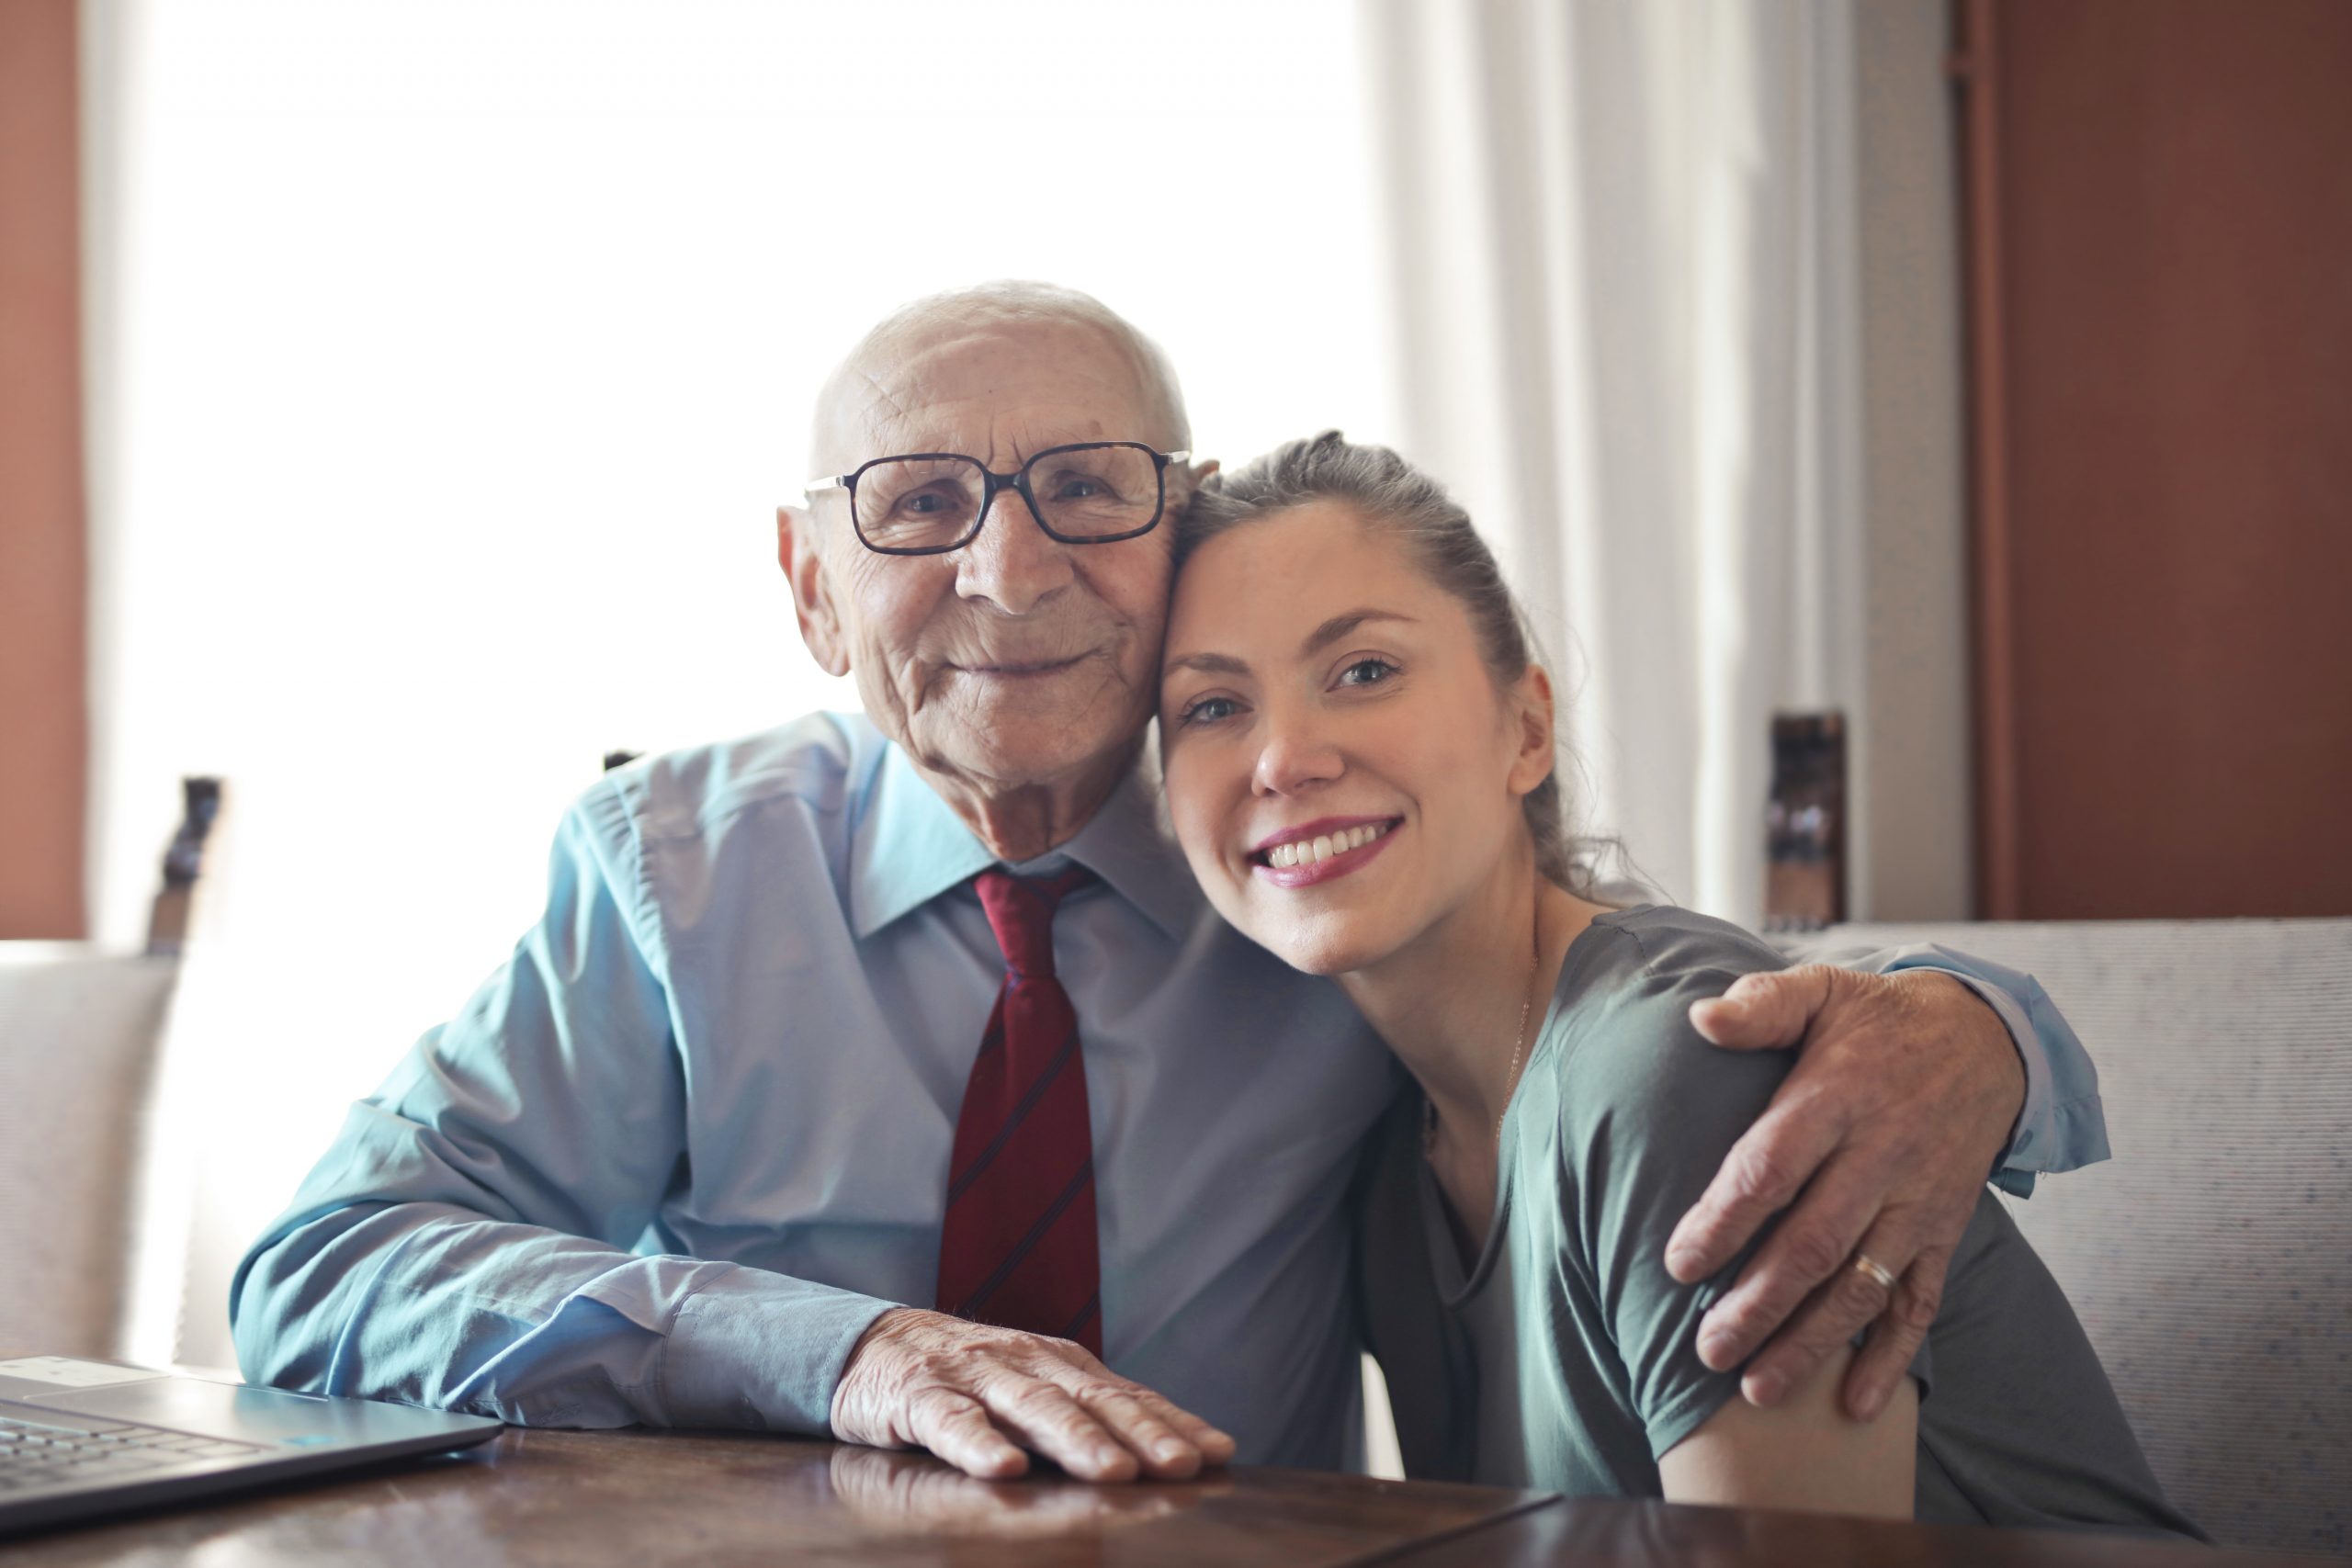 Ein älterer Mann mit Brille und Krawatte sitzt neben einer jüngeren Frau, die ihn umarmt, während sie beide lächeln und vor einem Laptop sitzen, was vertrauensvolle Finanzberatung zwischen Generationen veranschaulicht.